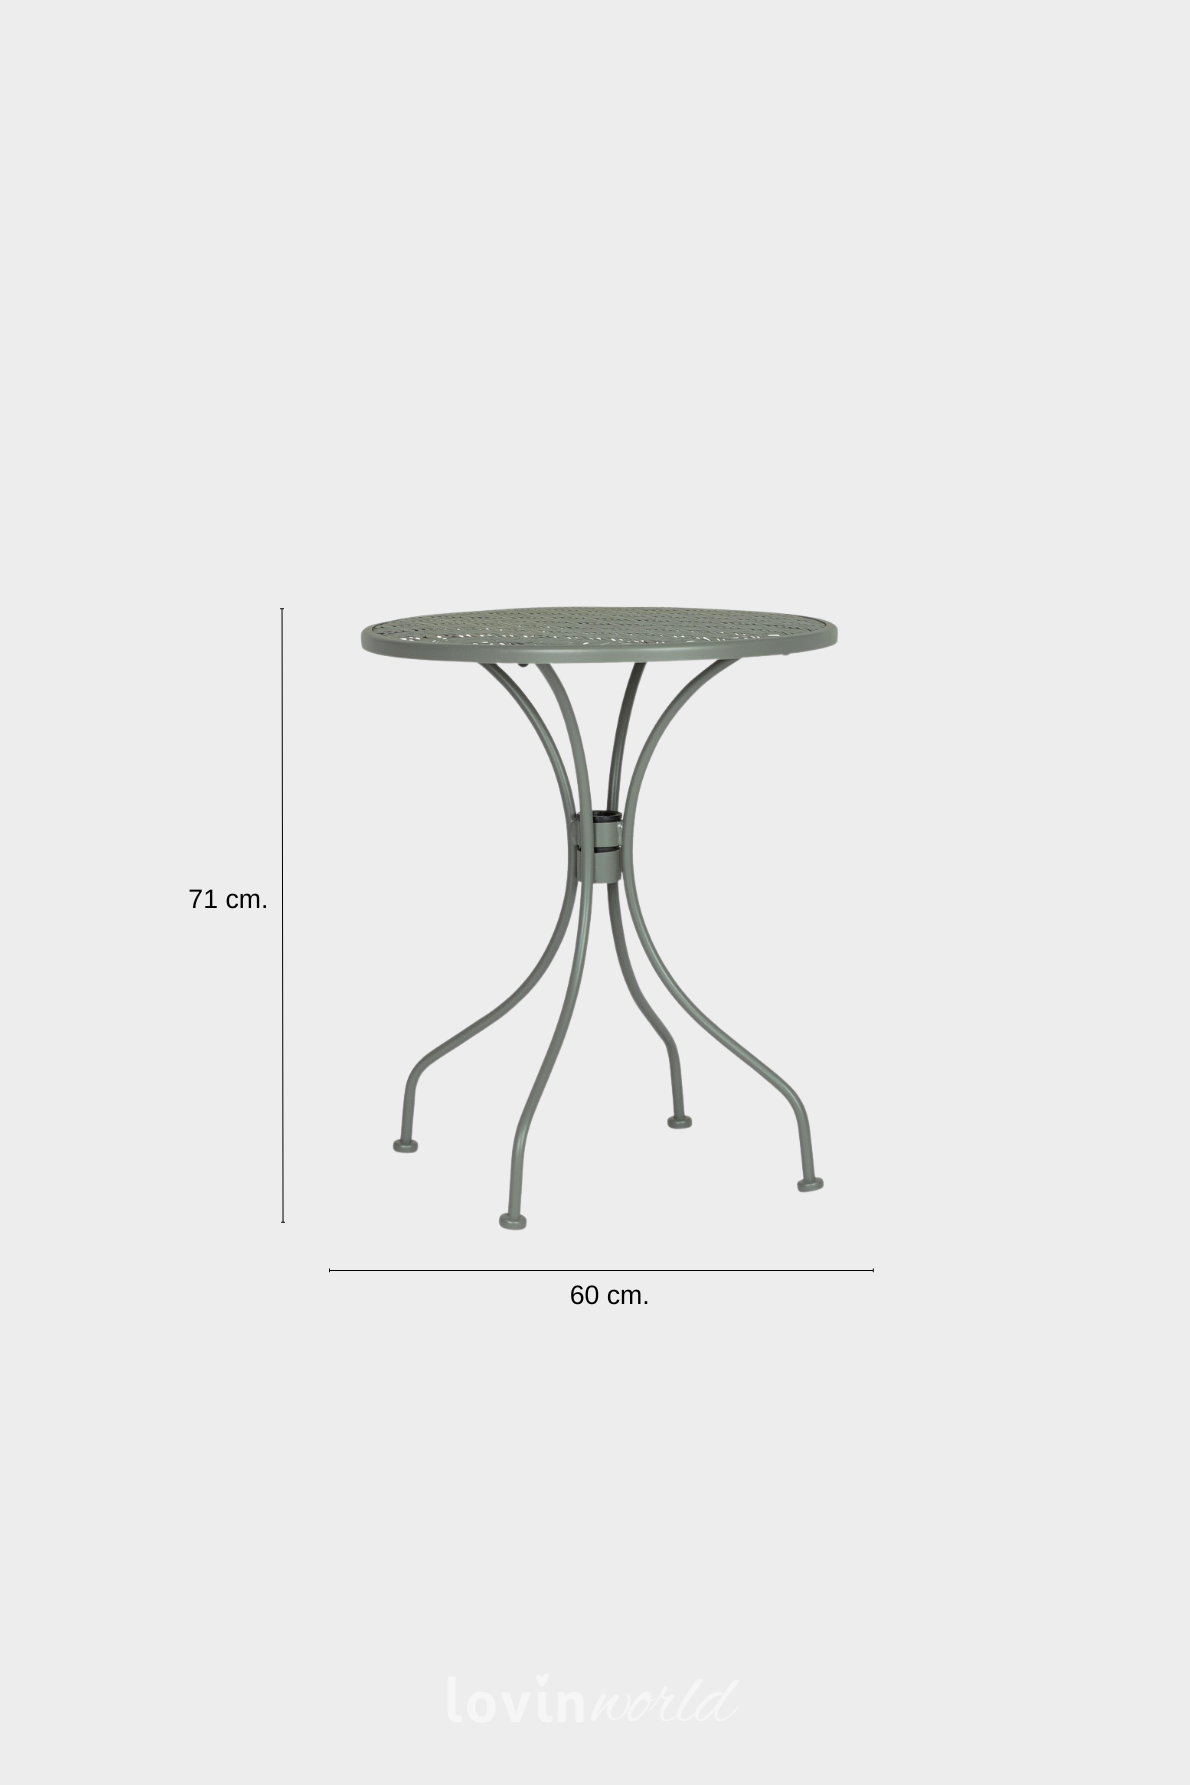 Tavolino da esterno Lizette Ø60 cm. in acciaio, colore verde scuro-6